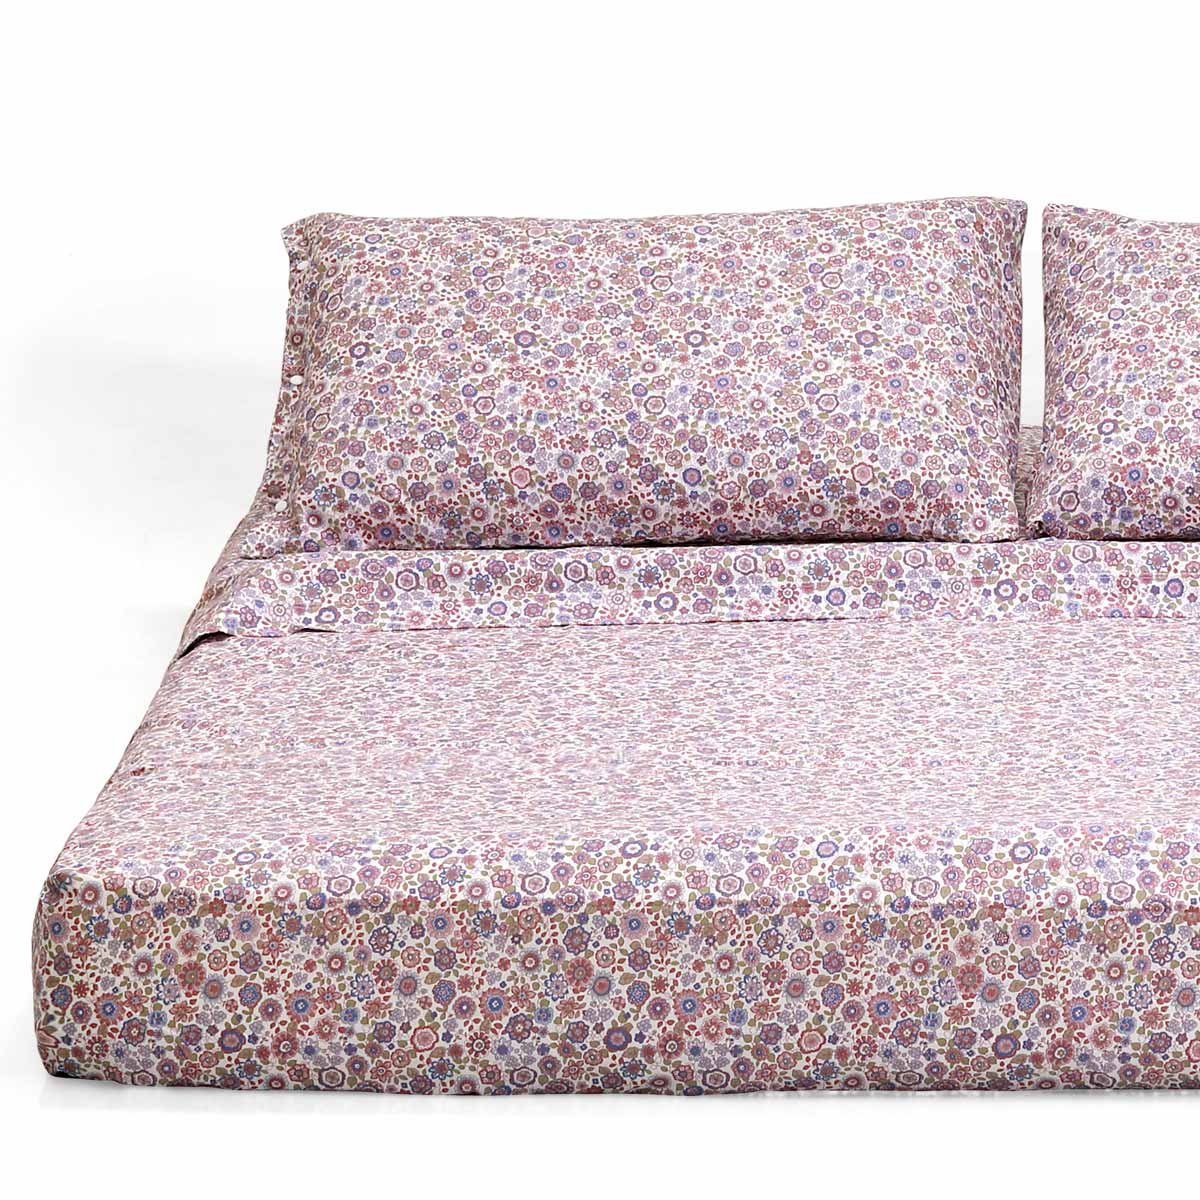 Coordinato letto con coppia di lenzuola a fiori rosa - Marianna